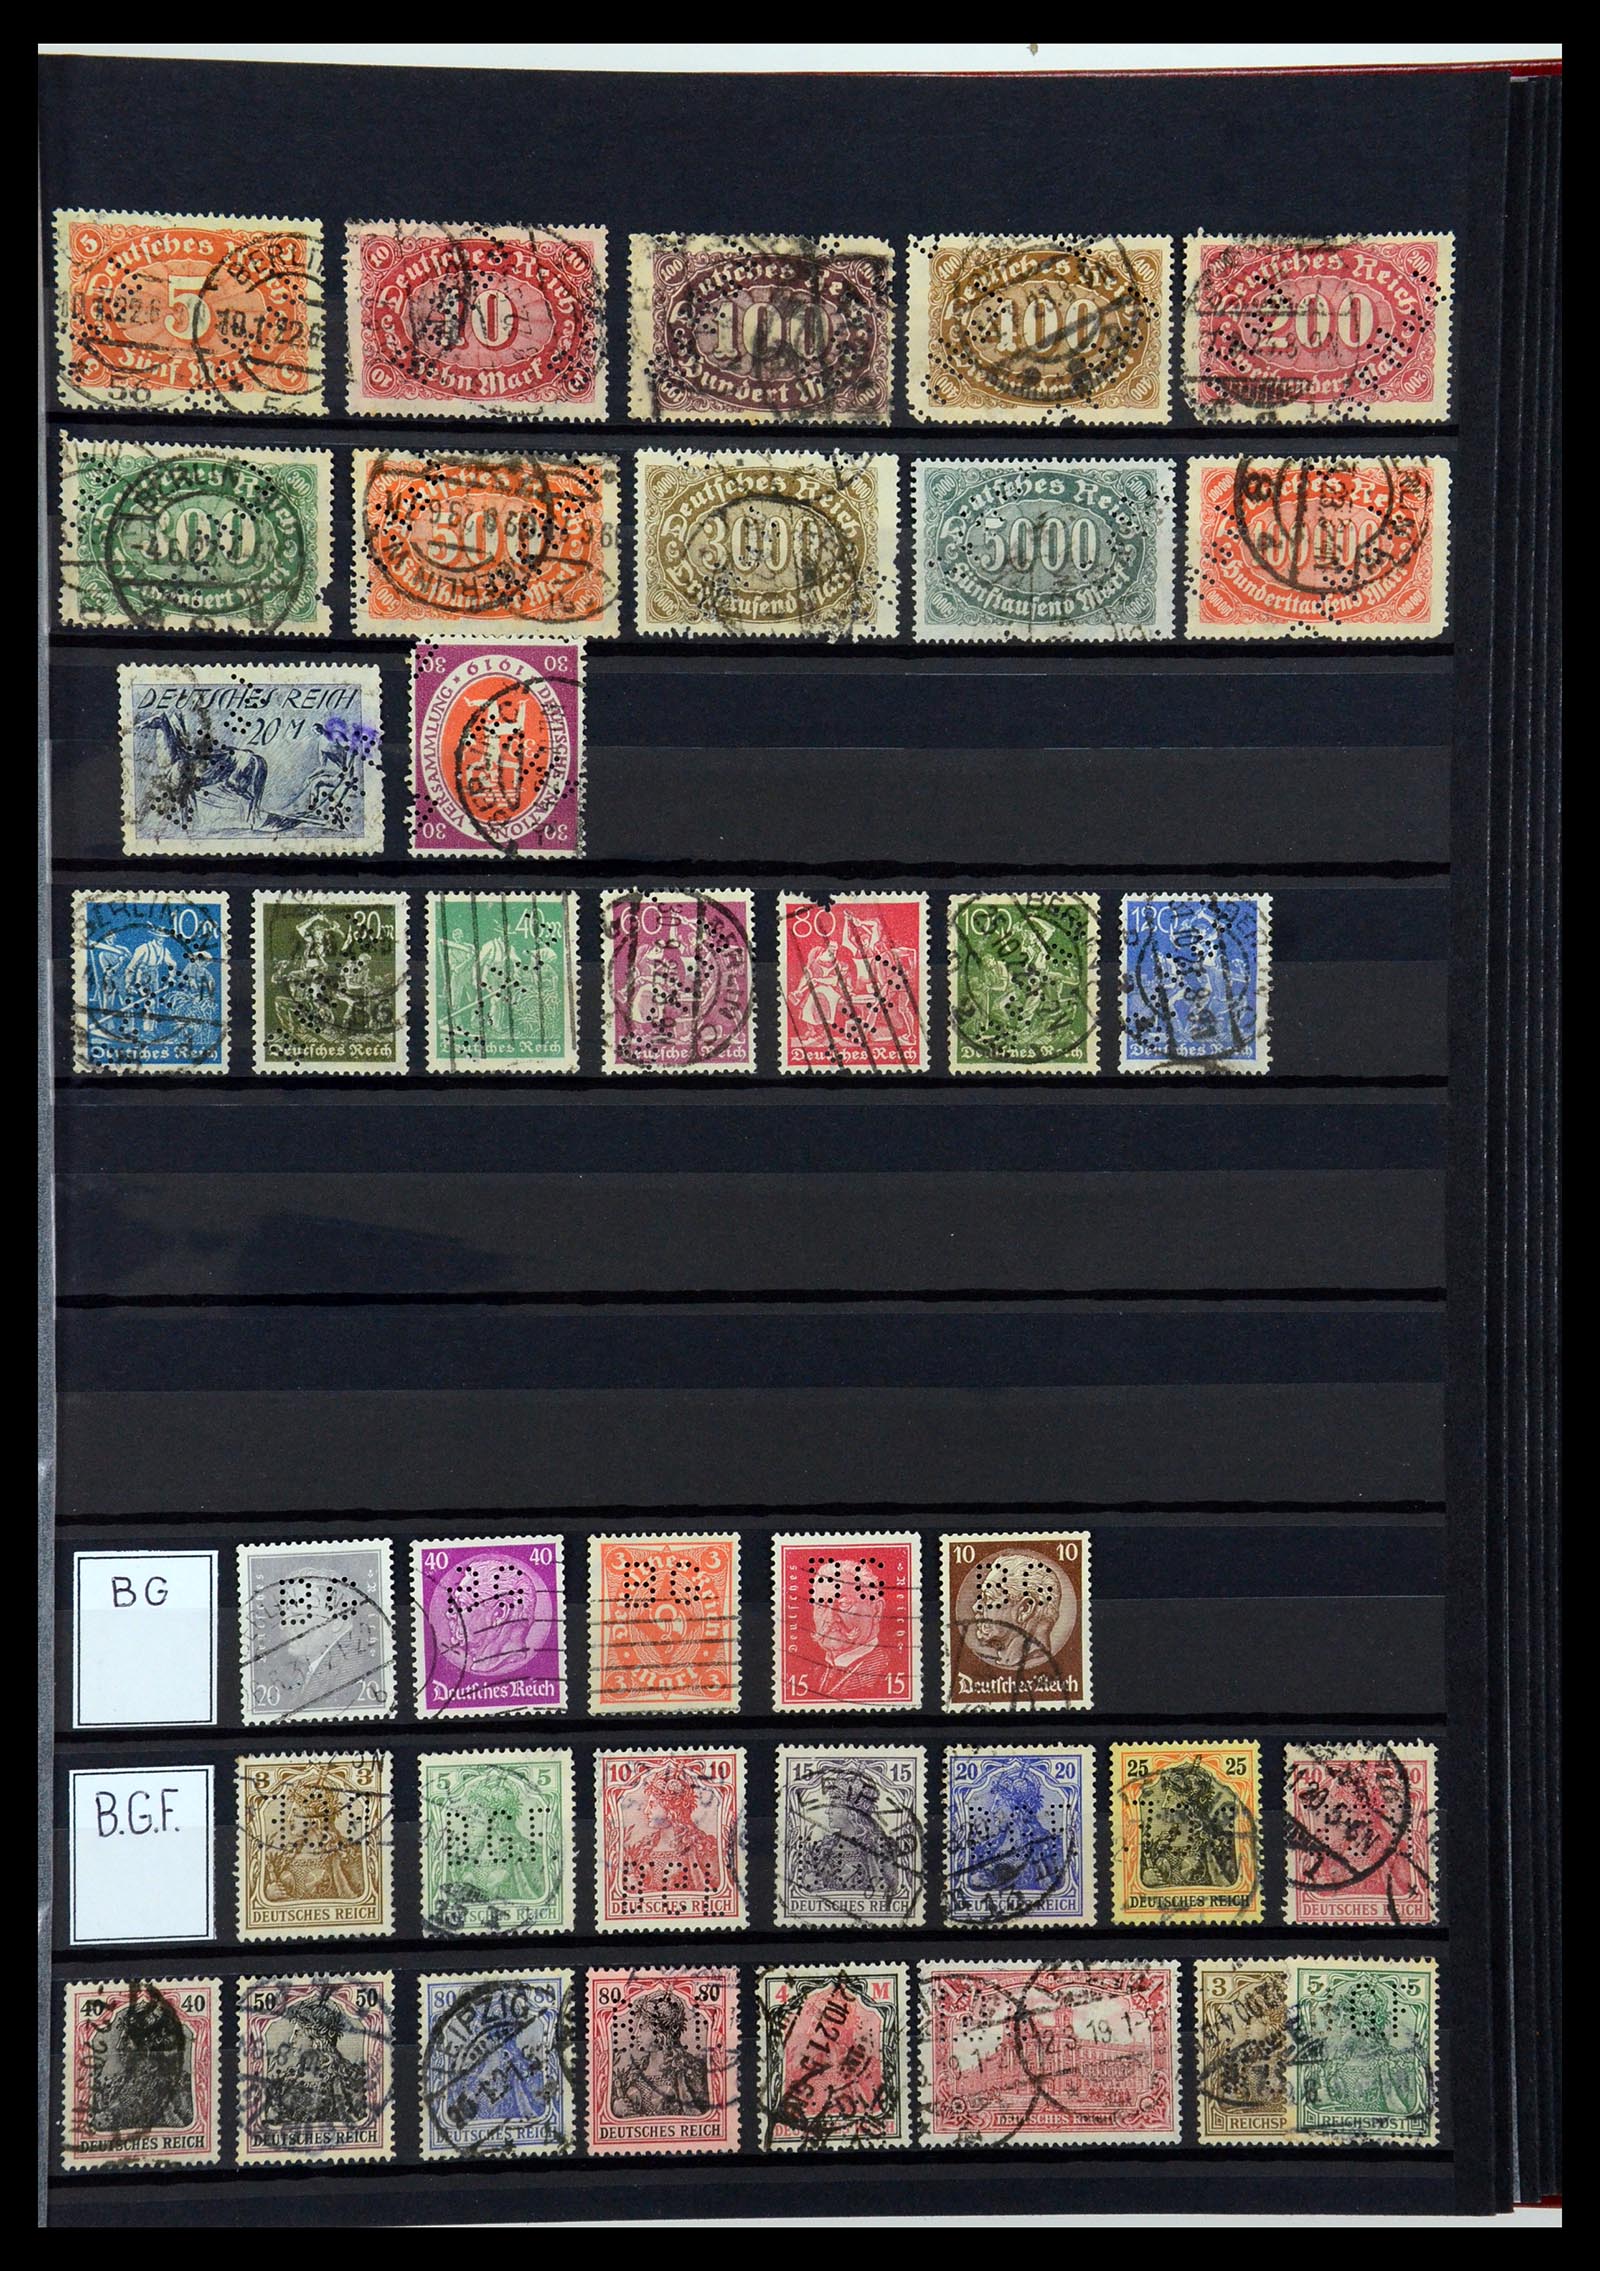 36405 039 - Stamp collection 36405 German Reich perfins 1880-1945.